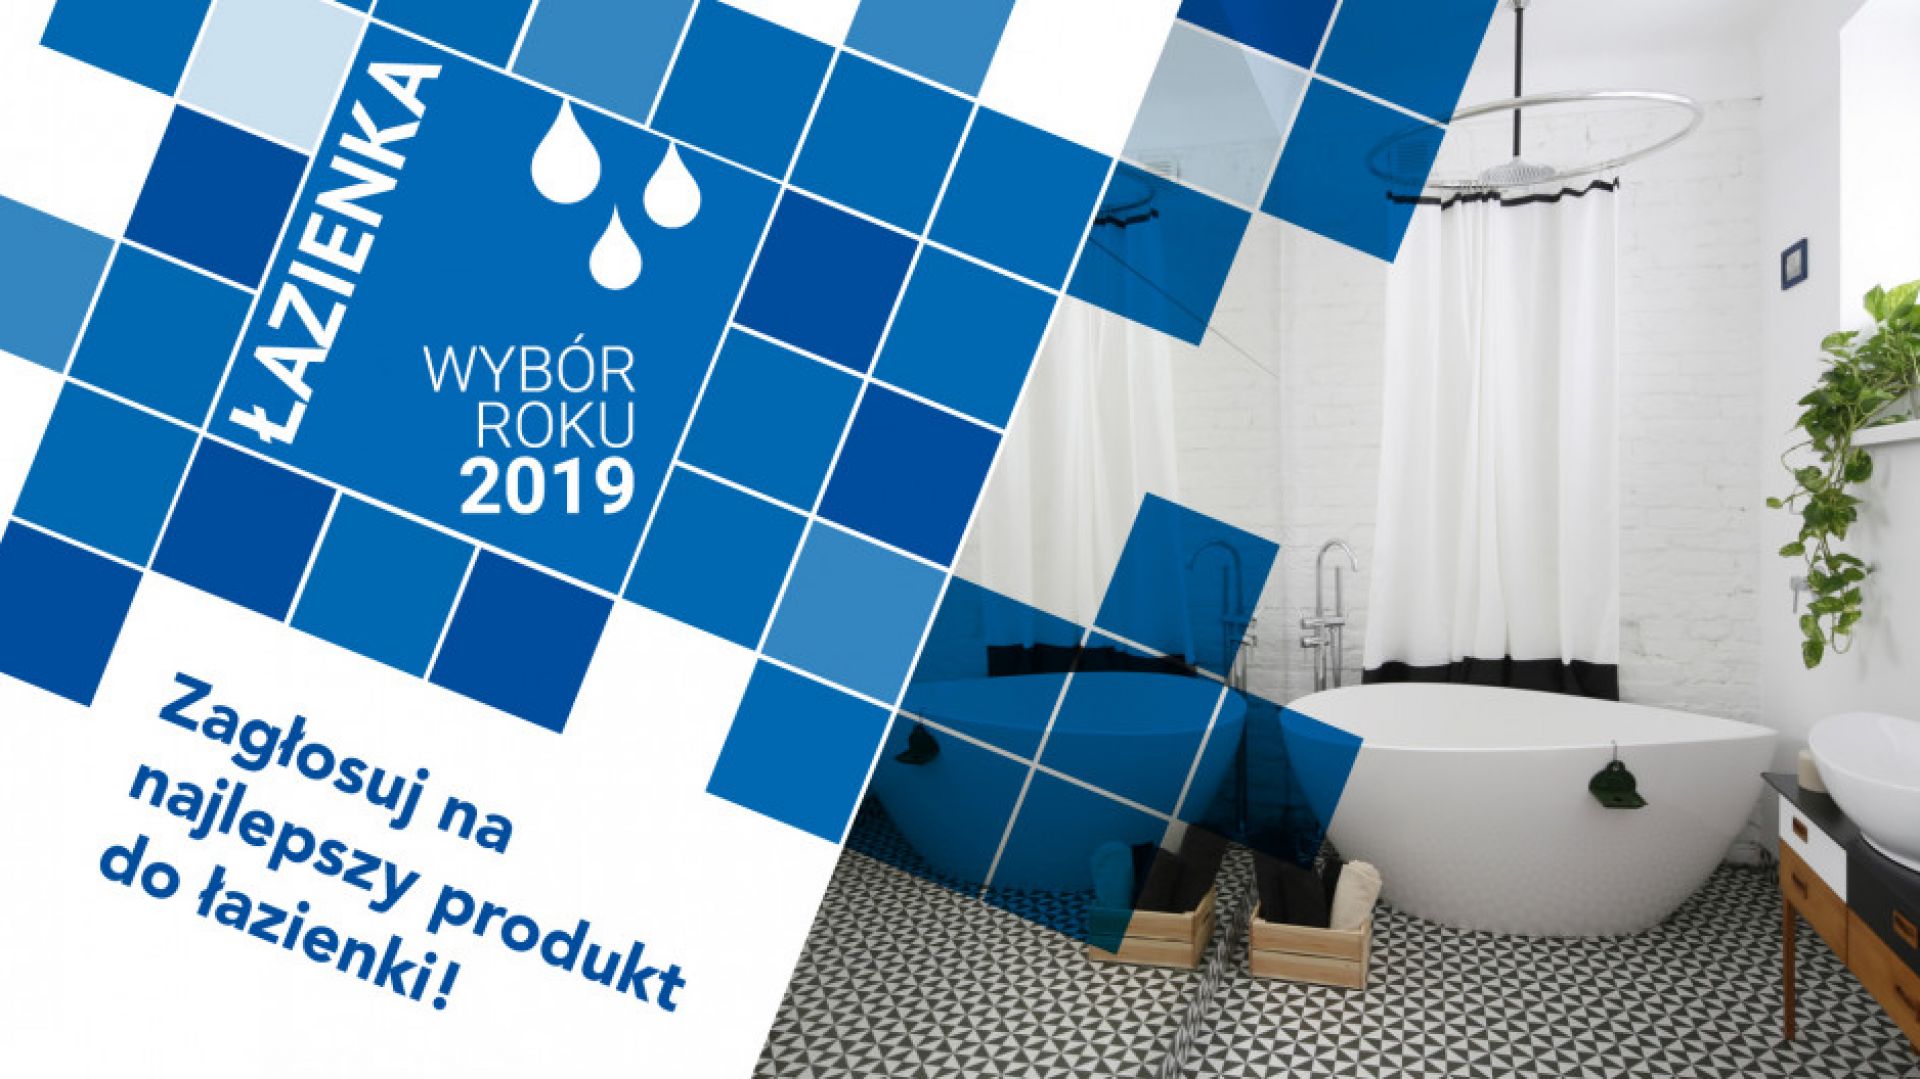 Zagłosuj na najlepszy produkt do łazienki 2019 roku!